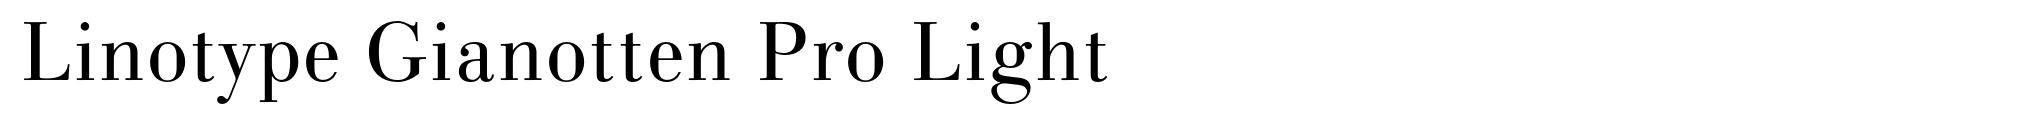 Linotype Gianotten Pro Light image